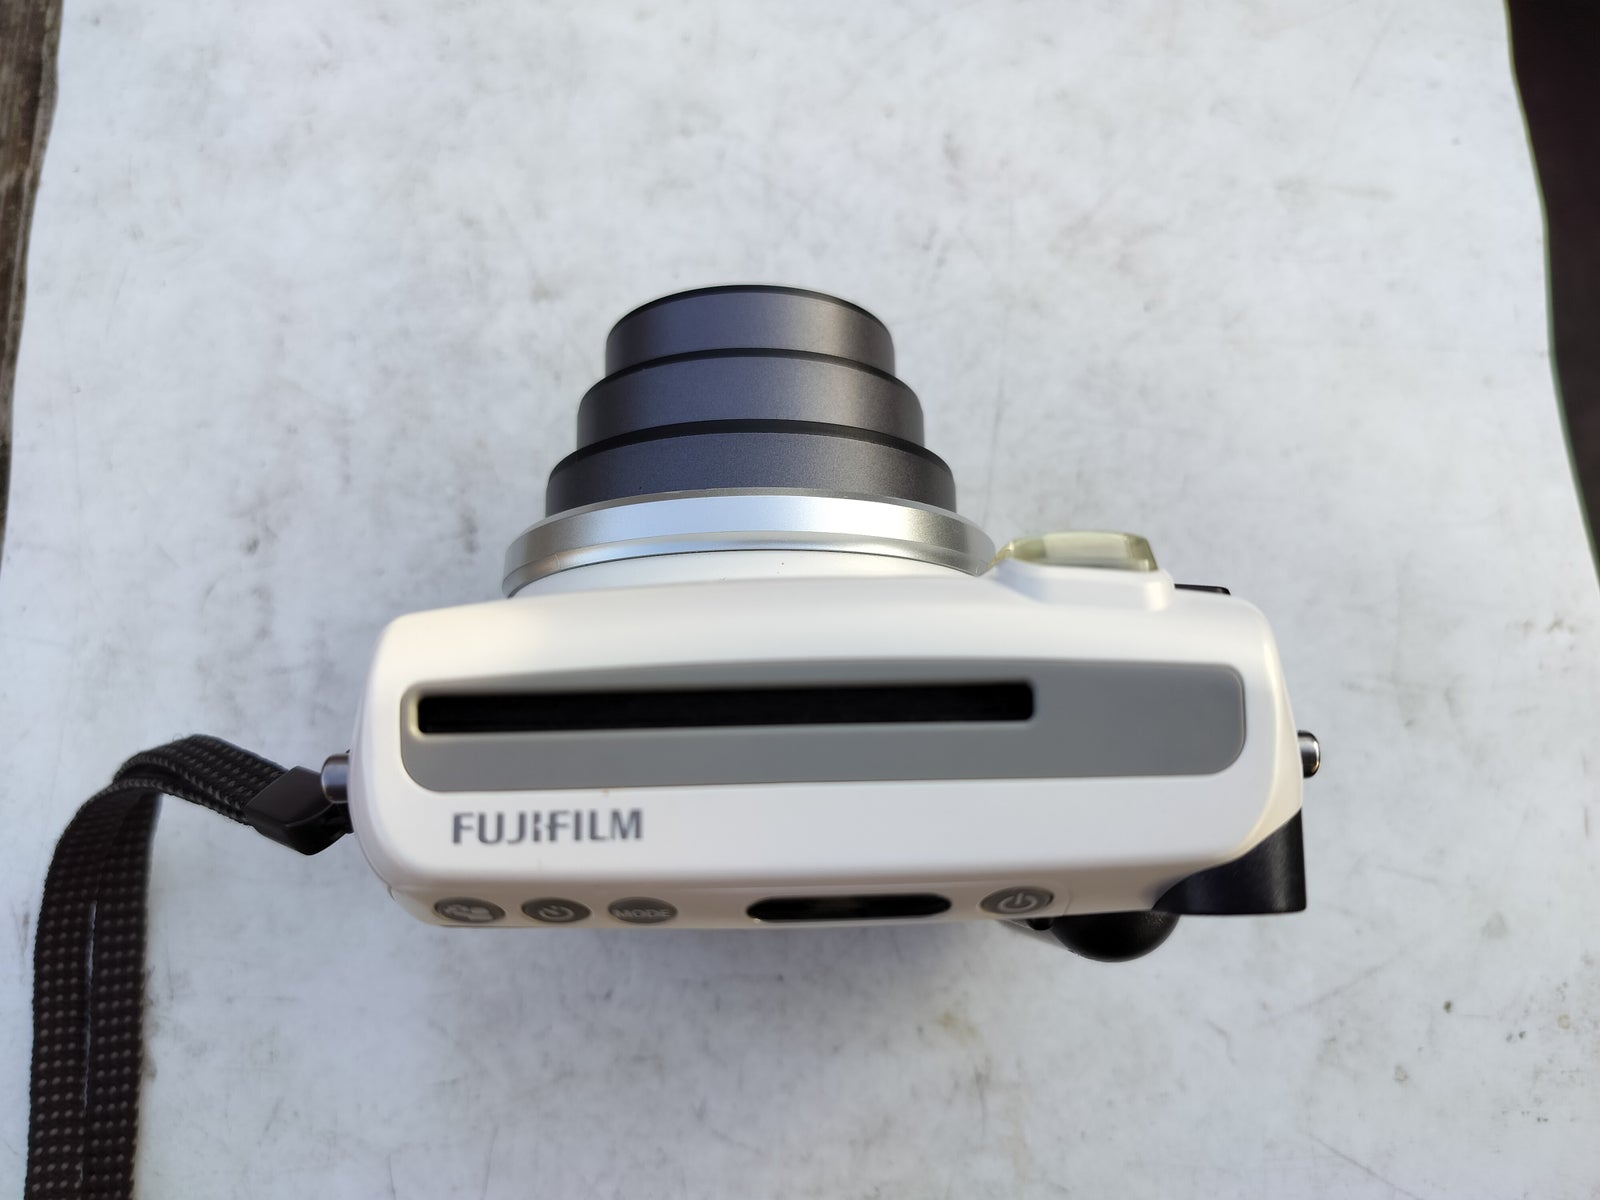 Fuji, Fujifilm Instax mini 70, God